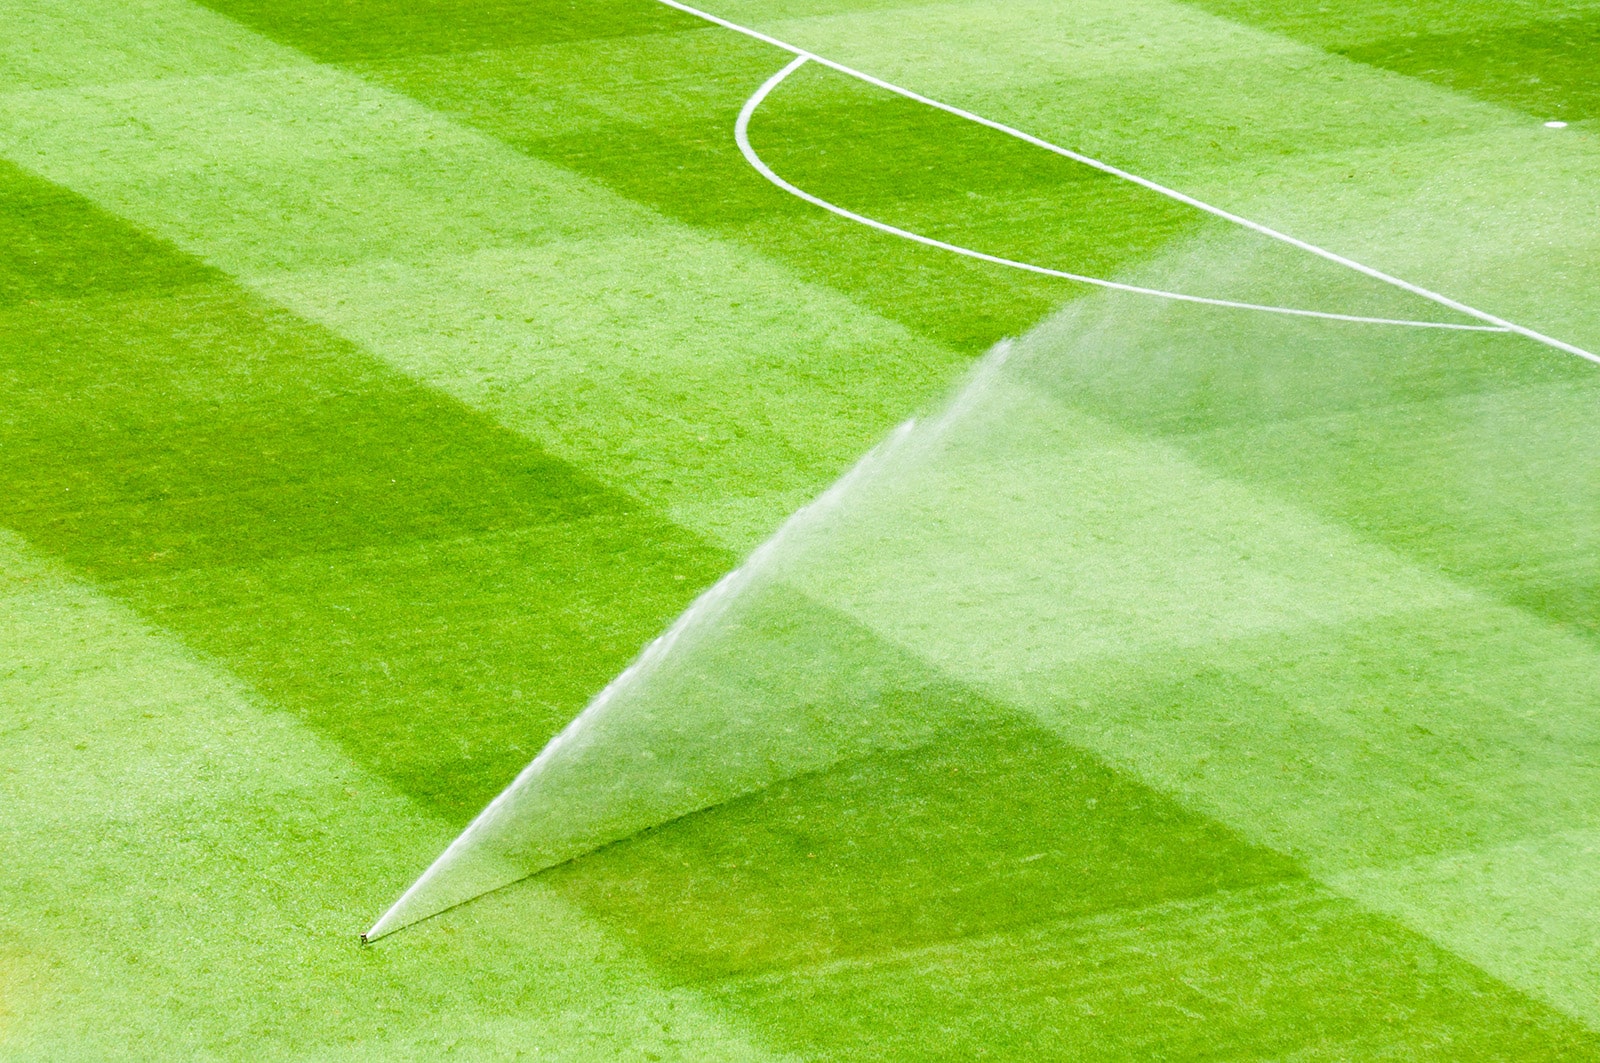 Sprinkler hydrating soccer field.